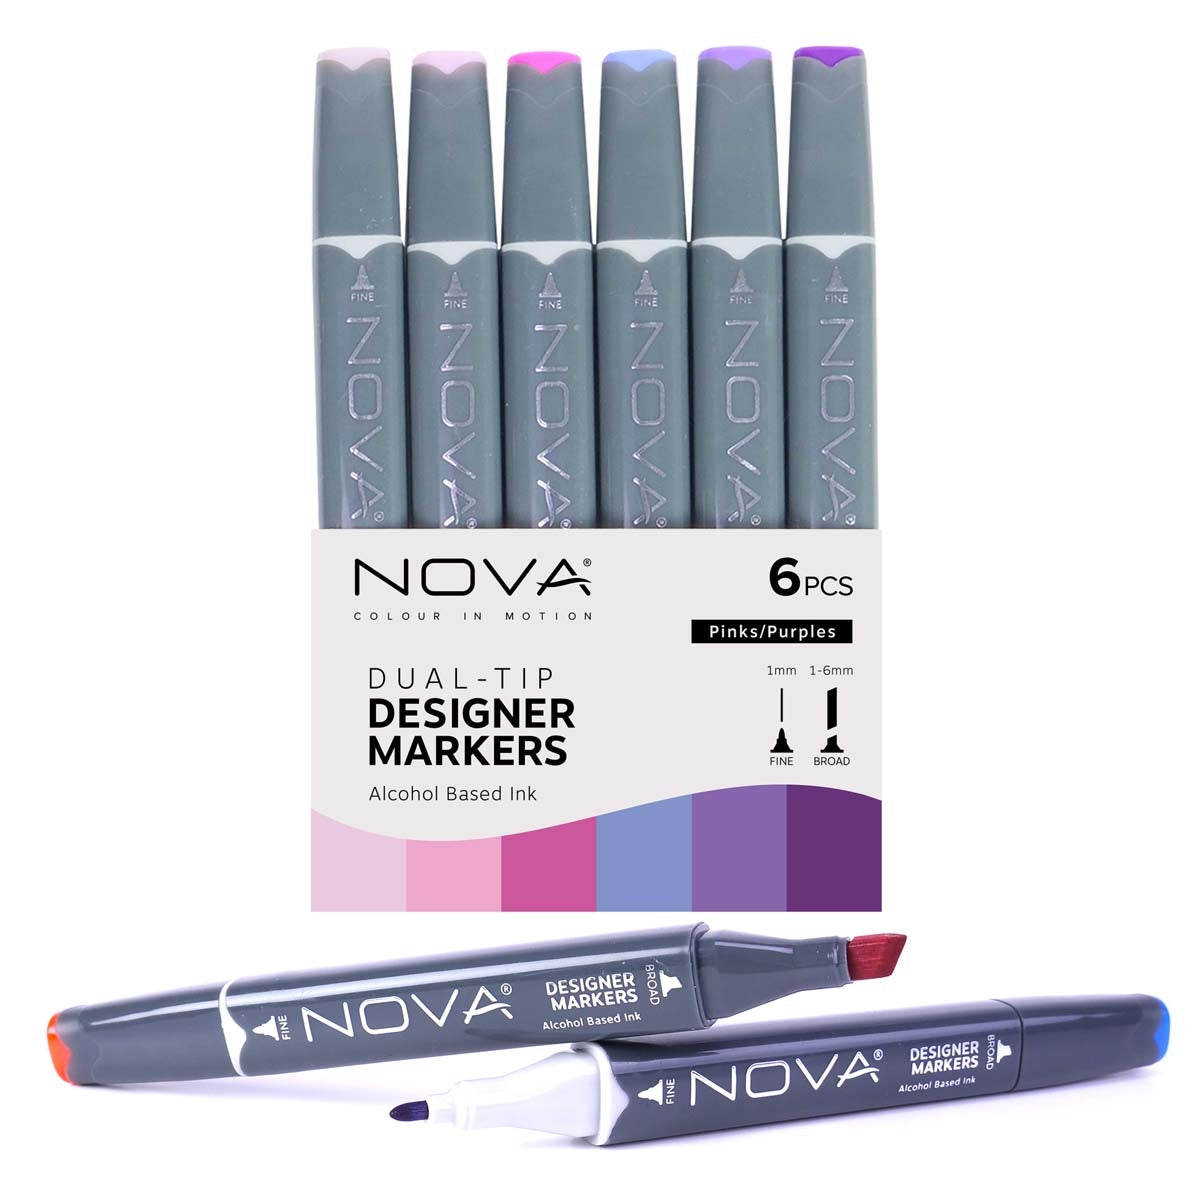 Nova - Designer Markers - Dual Tip - Alcohol Based - 6 Pack - Purples - Pinks